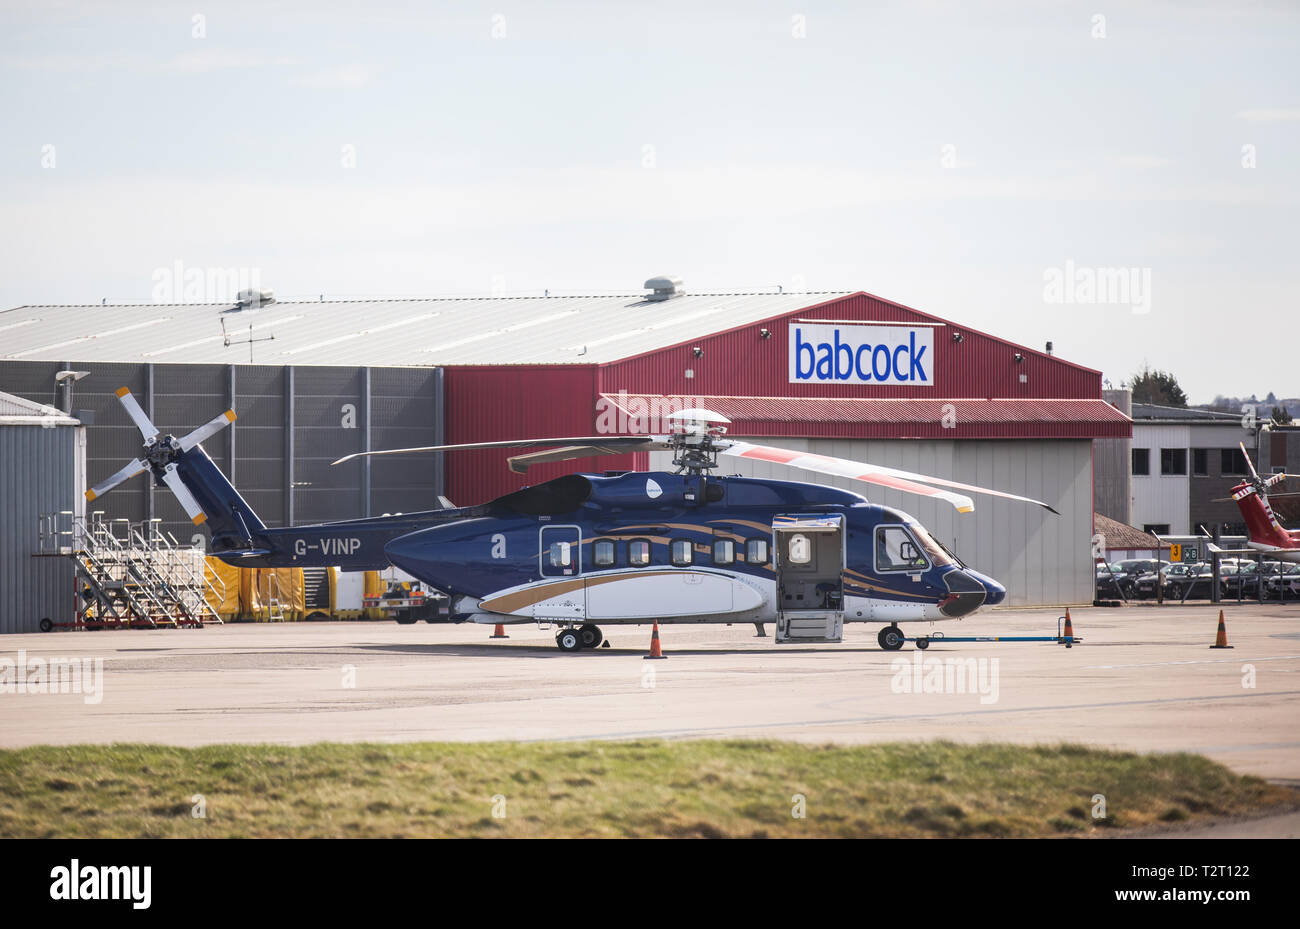 Un hélicoptère Sikorsky S-92 Babcock utilisé pour transporter les travailleurs du pétrole vers et depuis le forage en mer du Nord, photographié à l'aéroport d'Aberdeen, Écosse, Royaume-Uni. Banque D'Images